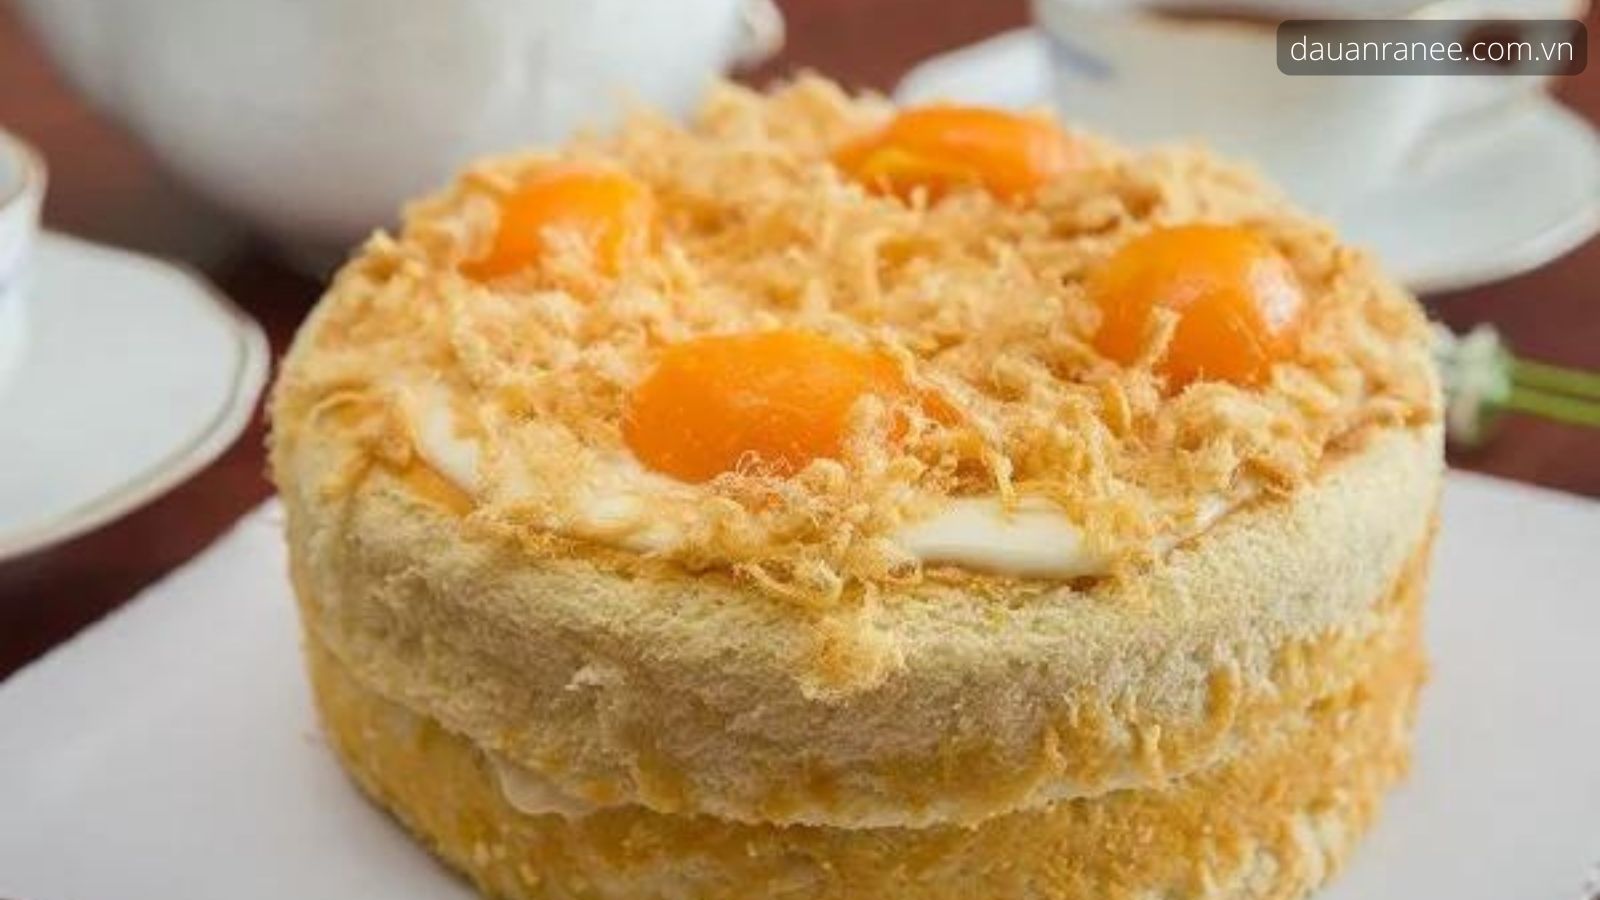 Bánh bông lan trứng muối hương vị đặc biệt - Mua đặc sản Vũng Tàu thơm ngon